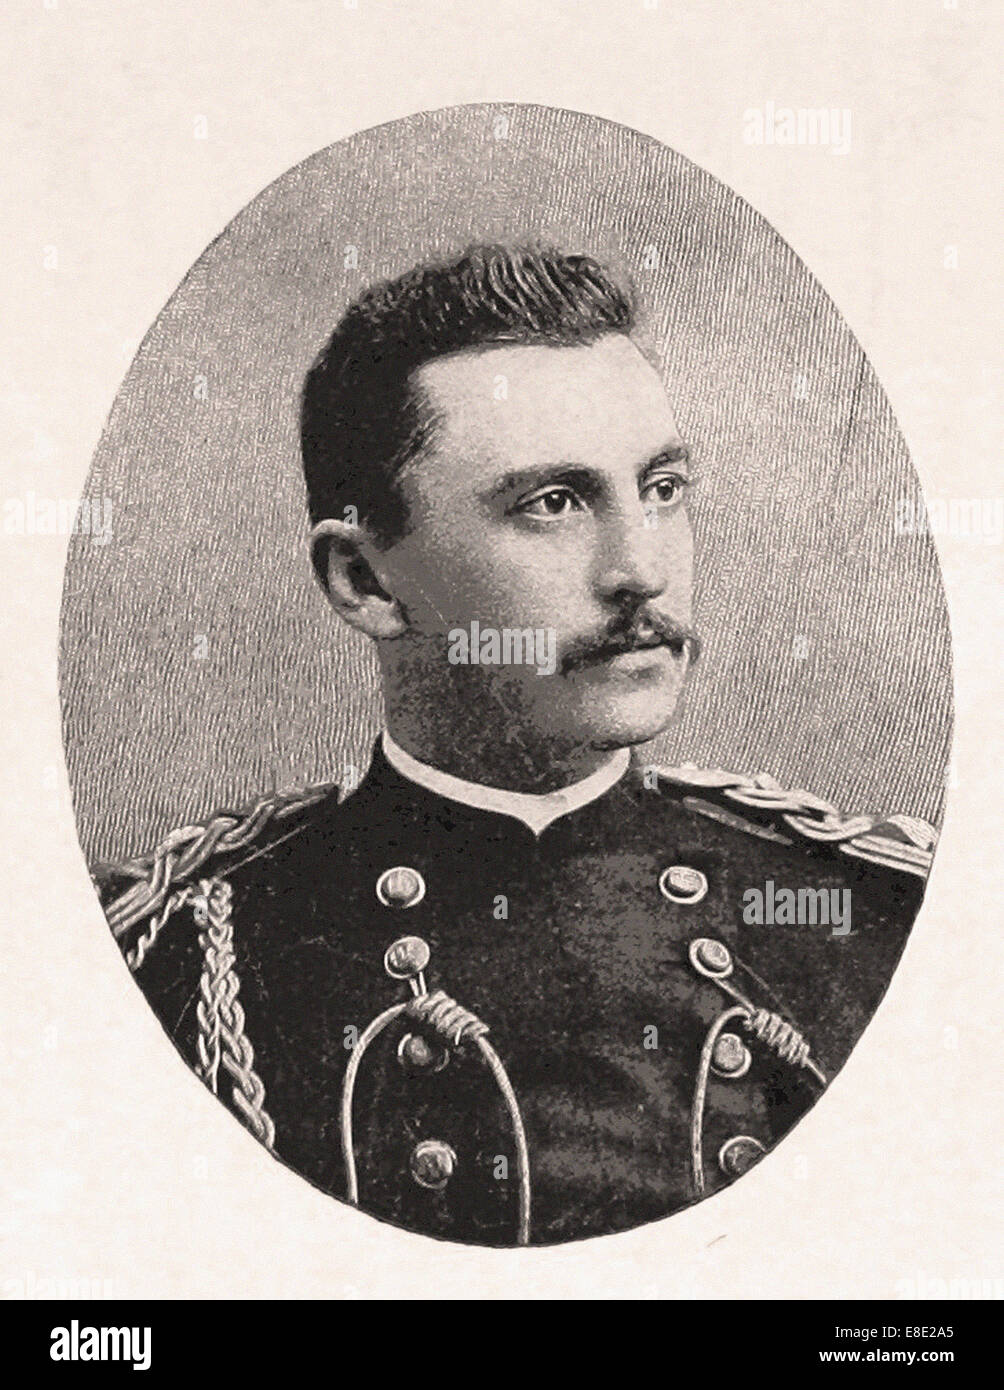 Porträt von Captain Bucky O'Neill - Gravur - XIX. Jahrhundert Stockfoto